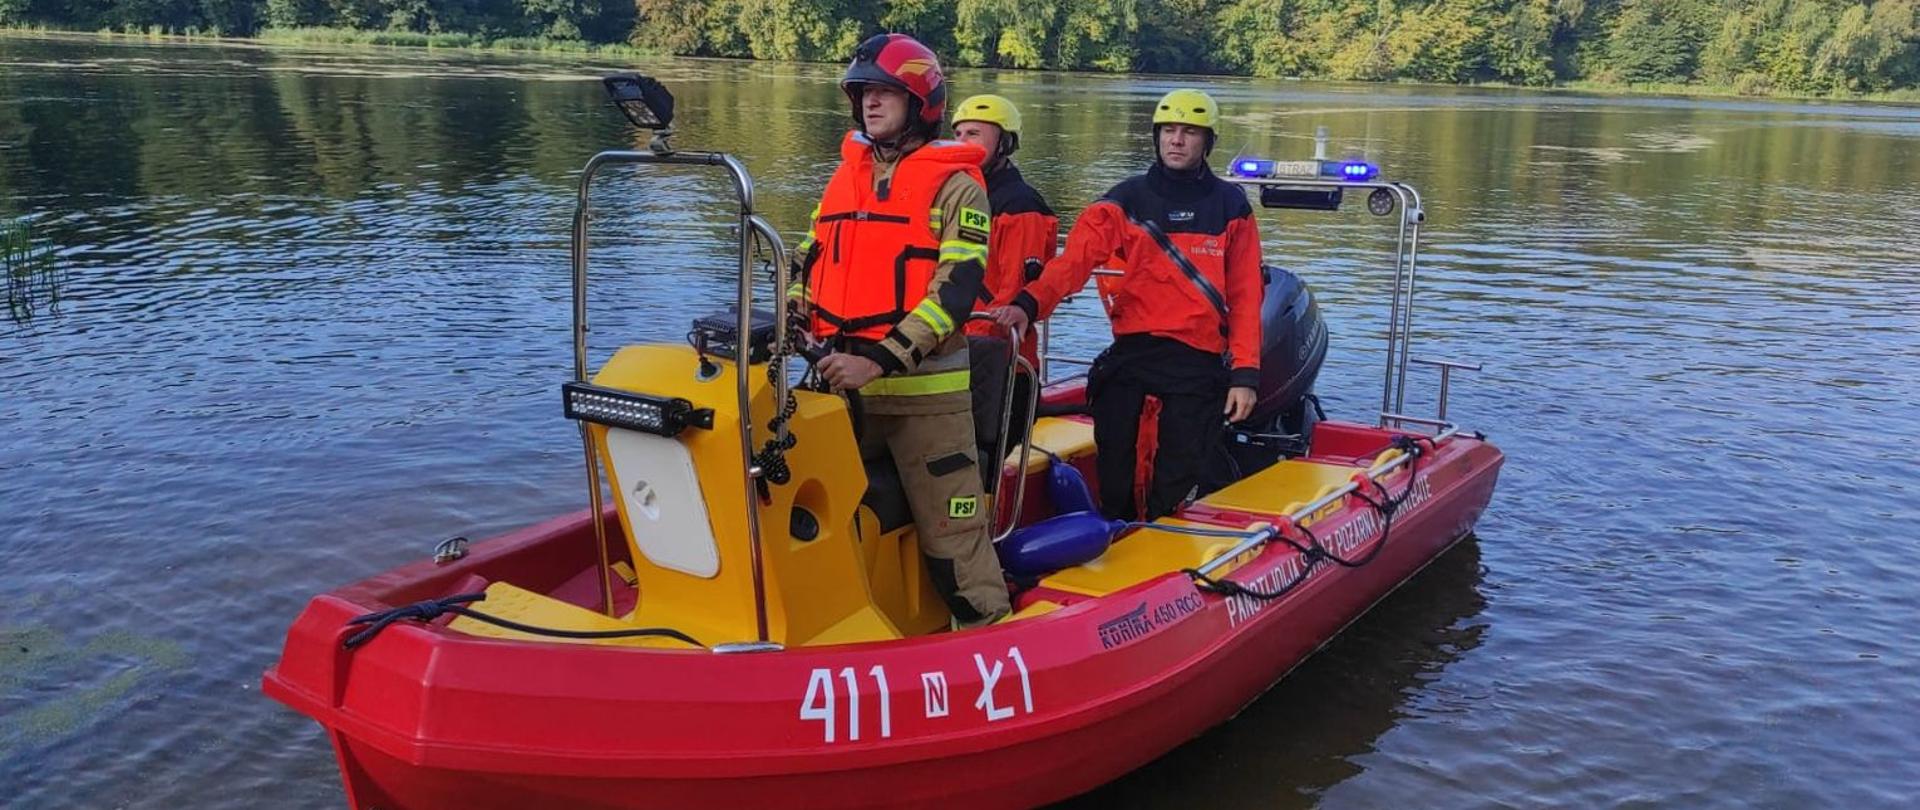 Na jeziorze stoi czerwona lódź strażacka a na niej trzech strażaków ubranych w kombinezony do pracy w wodzie.